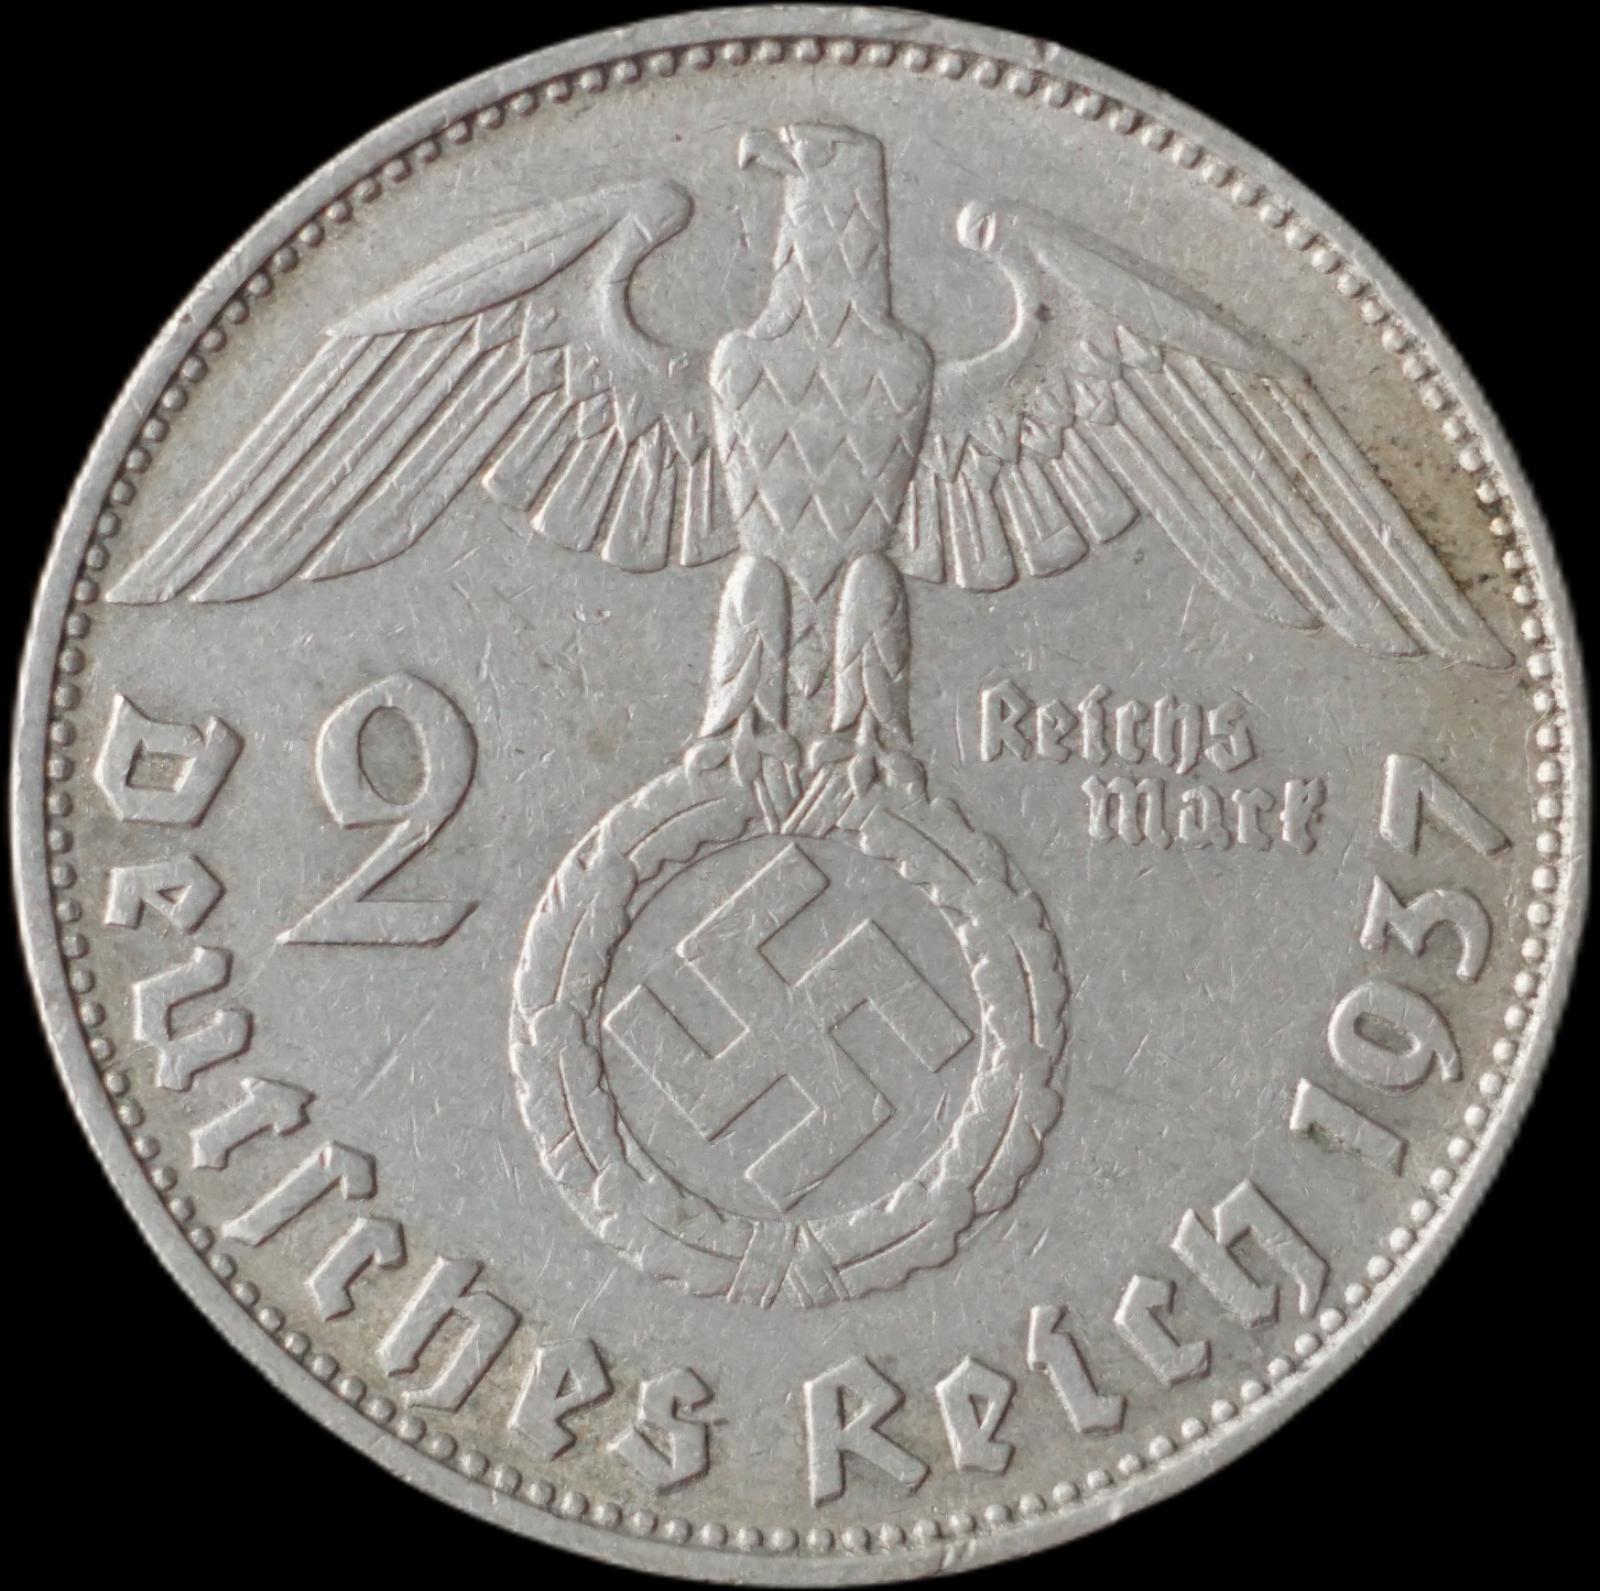 Nemecko - 2 Marka 1937 D Hindenburg - strieborná minca - Numizmatika